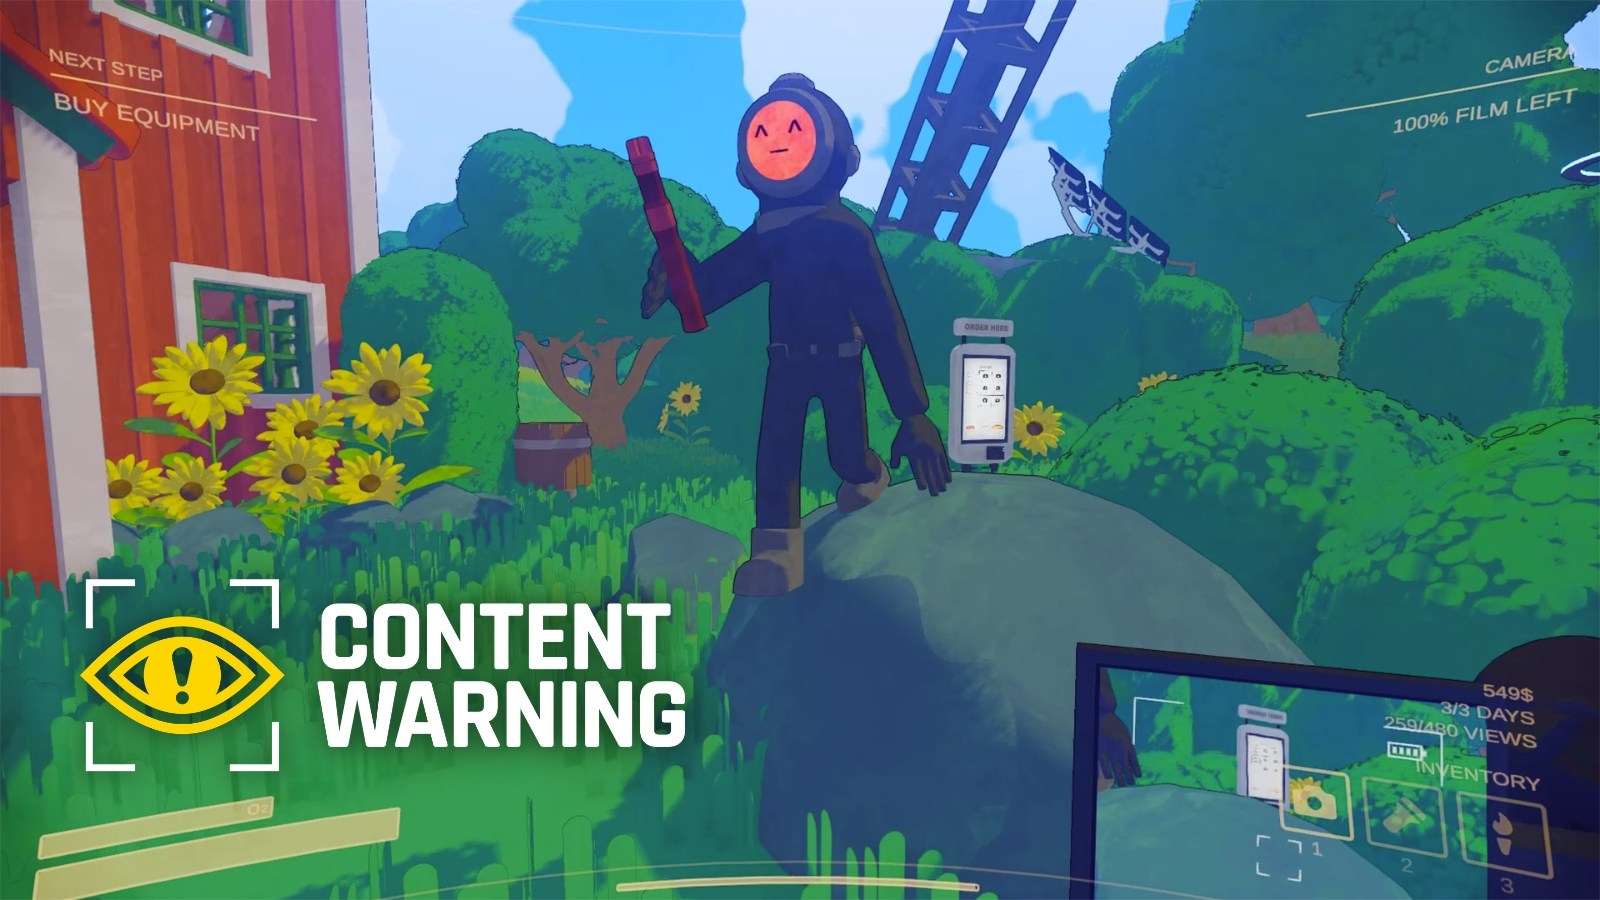 Предупреждение о контенте теперь позволяет вам стать вирусным в реальной жизни с помощью Lost Footage Project.